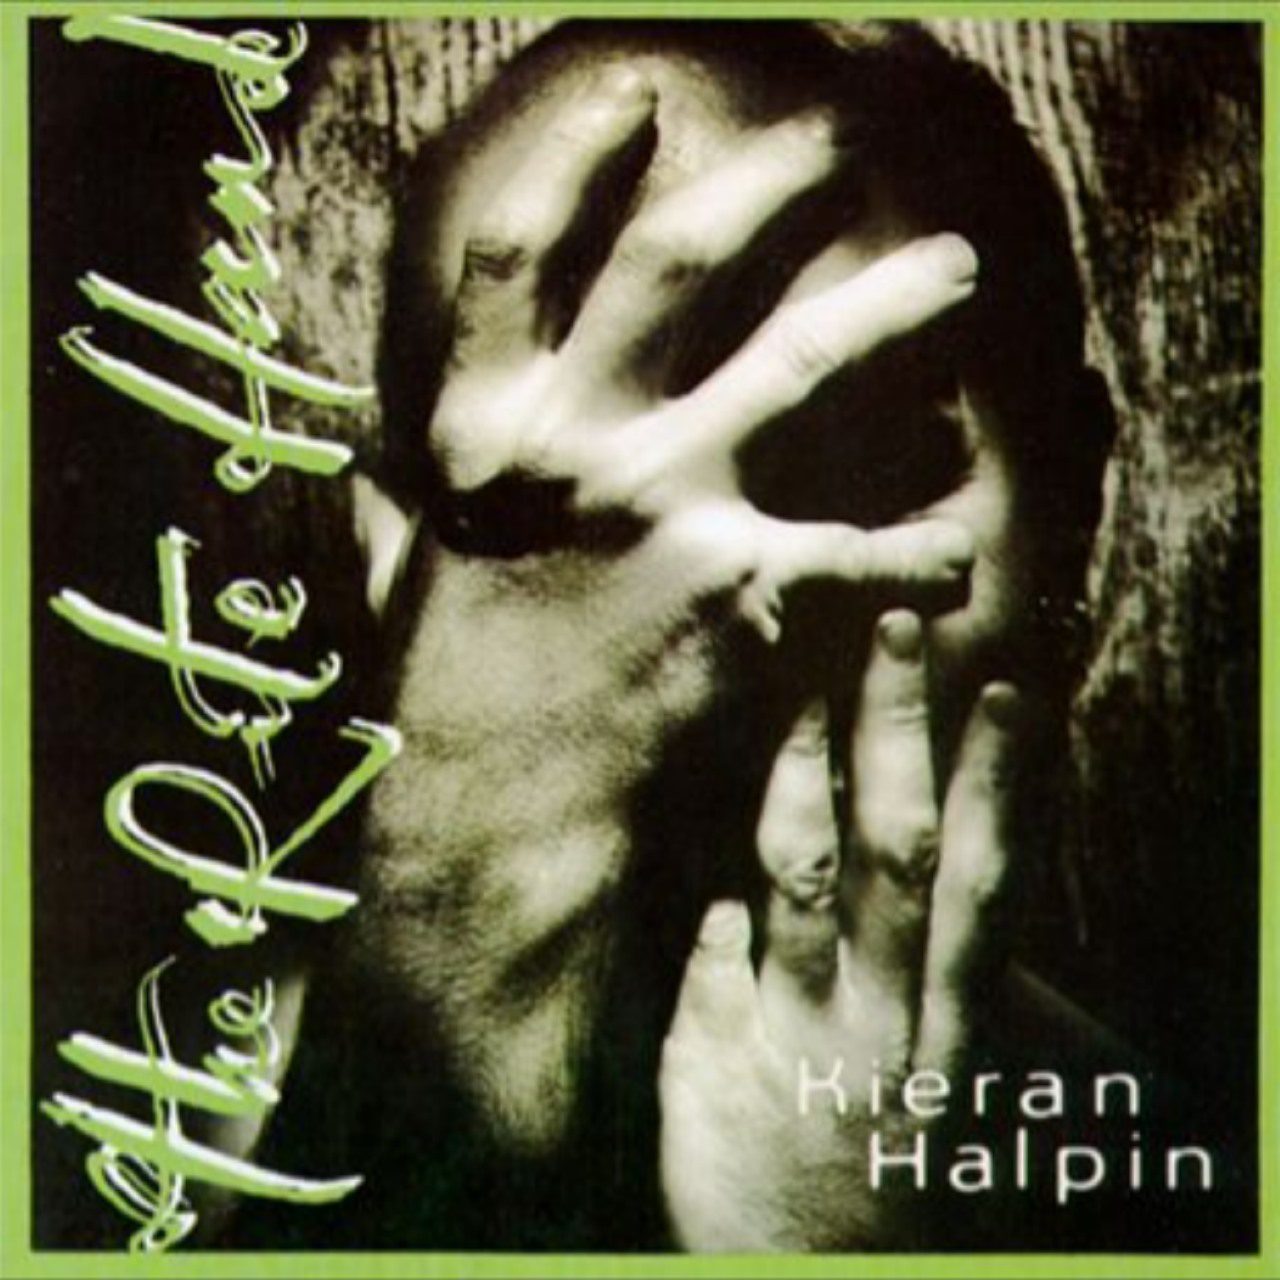 Kieran Halpin – The Rite Hand cover album